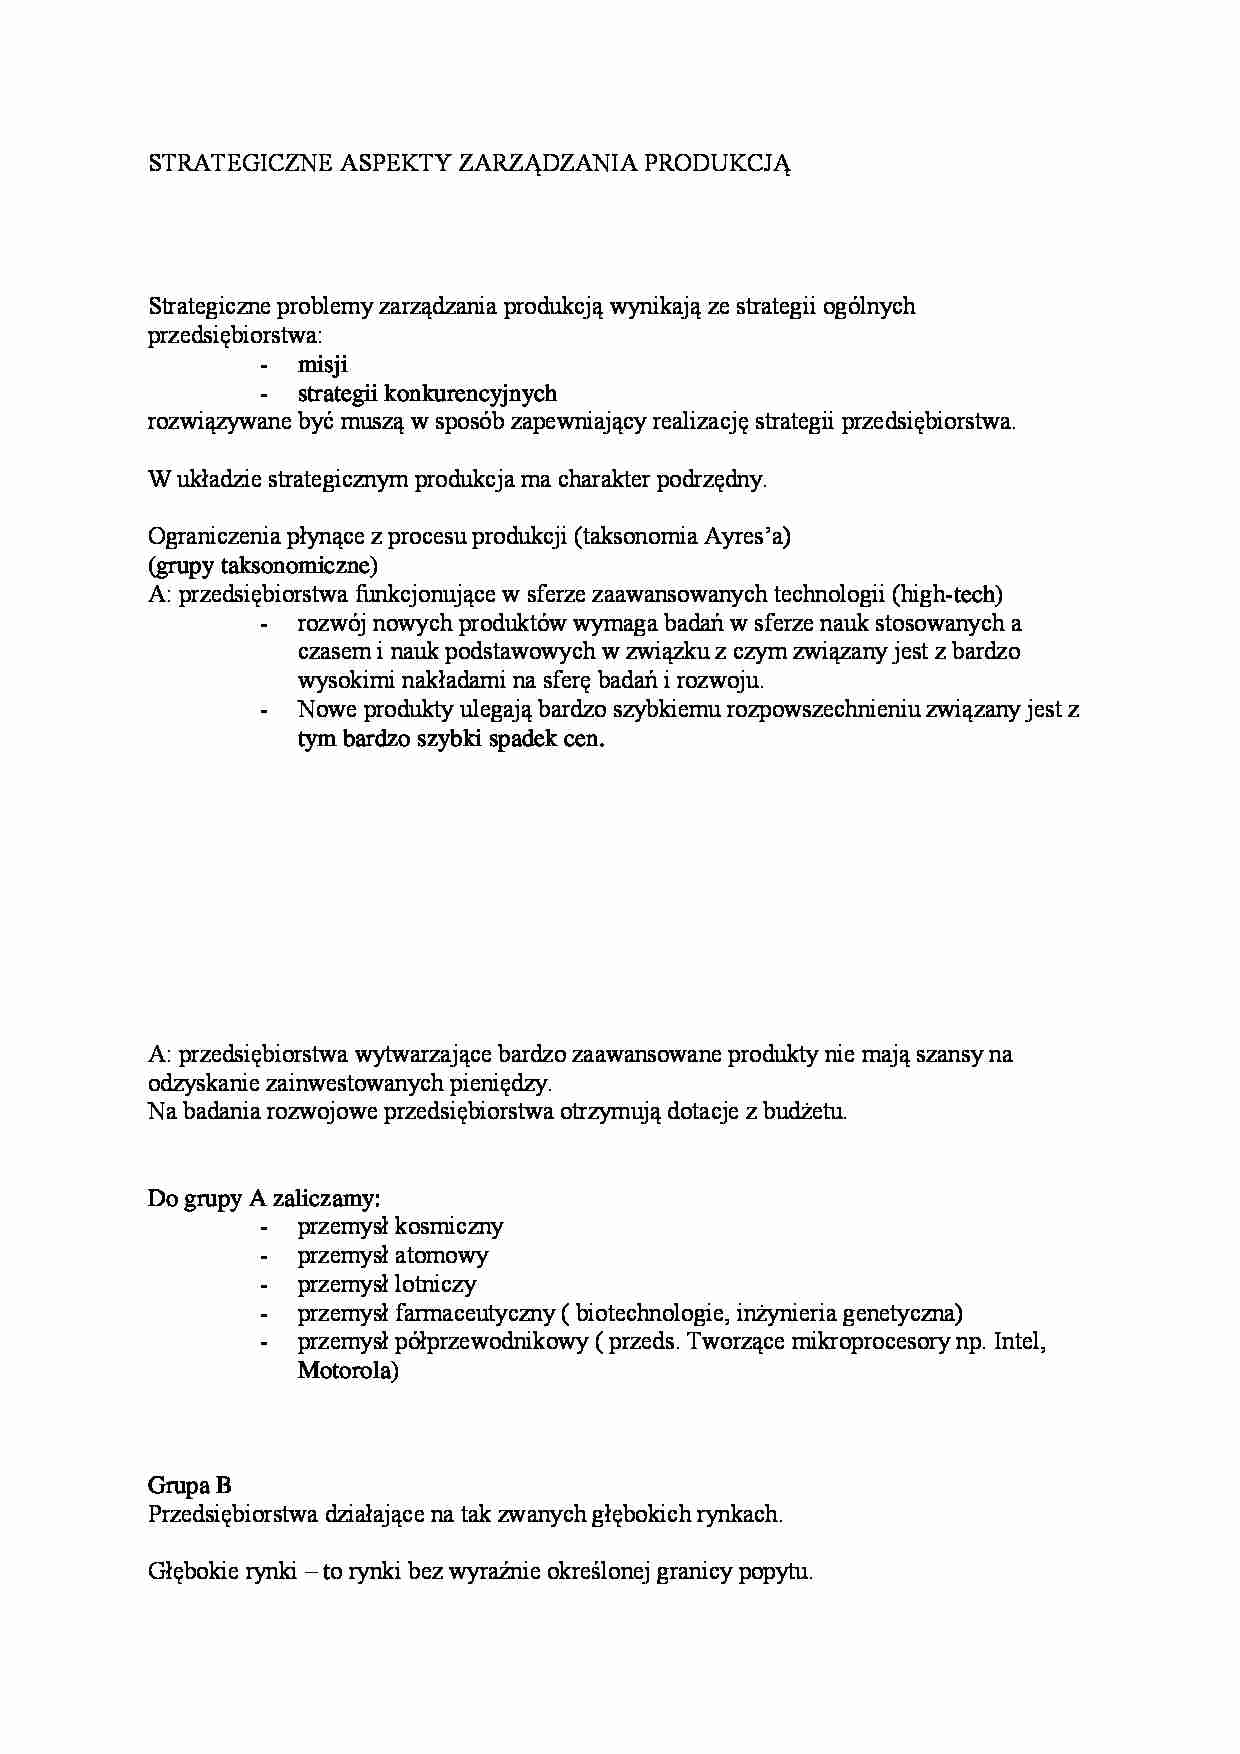 Strategiczne aspekty zarządzania produkcją - strona 1